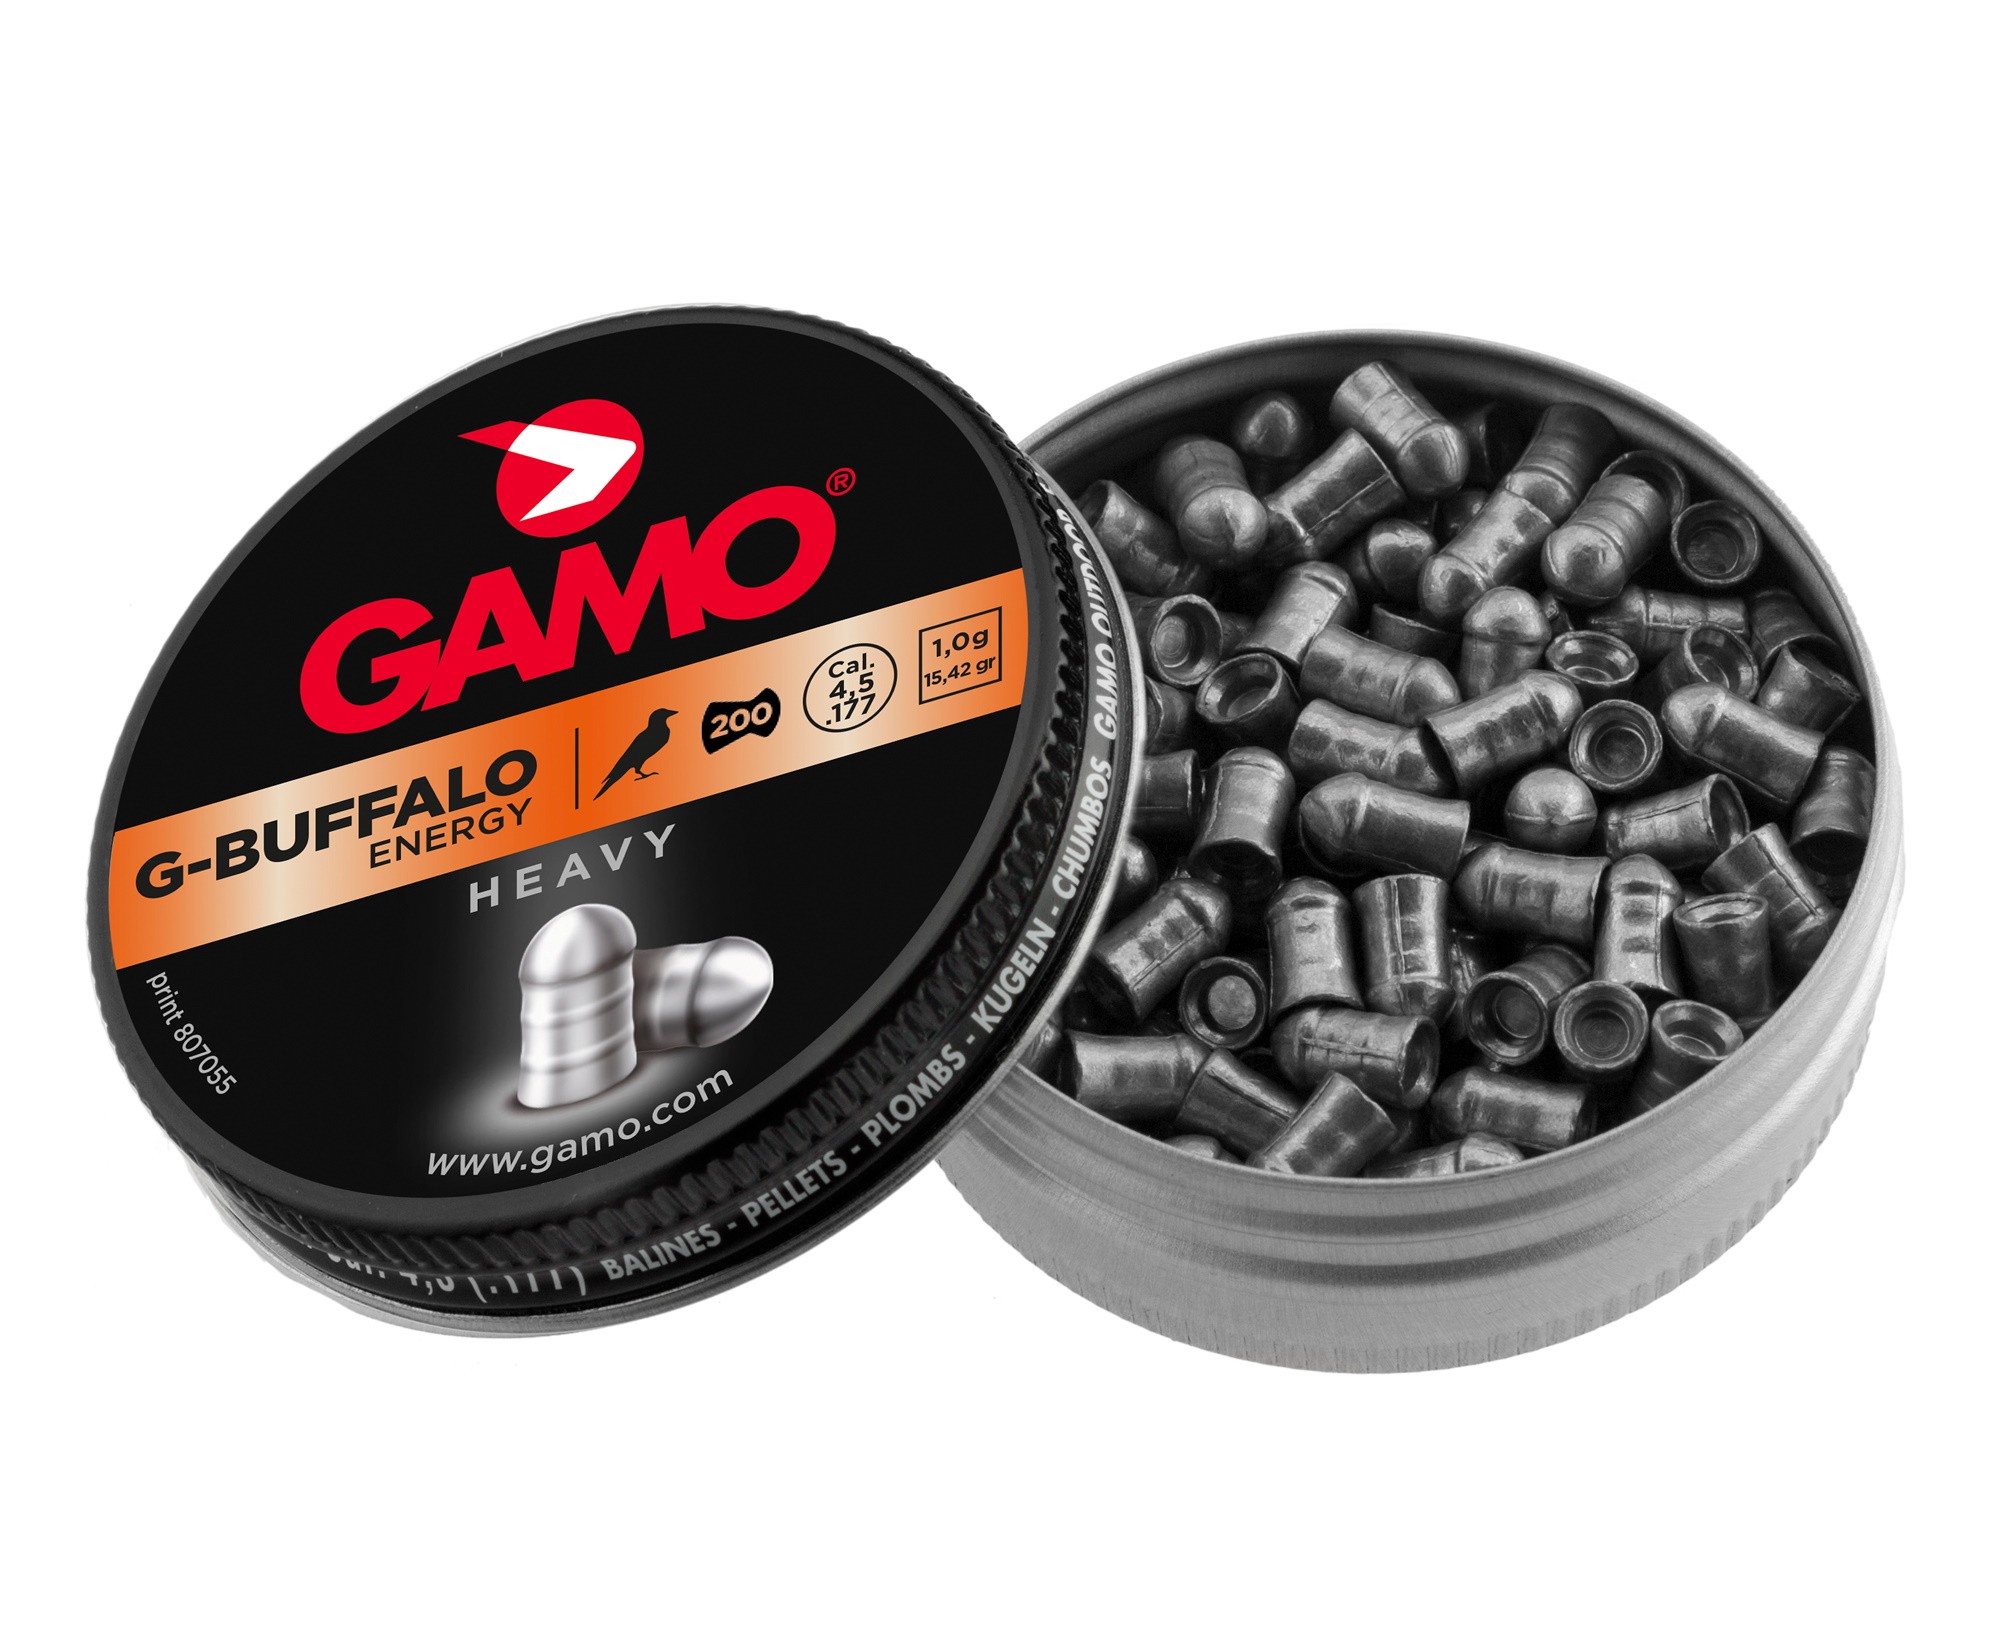 Пули Gamo G-Buffalo 4,5 мм, 1,0 грамм, 200 штук, изображение 2